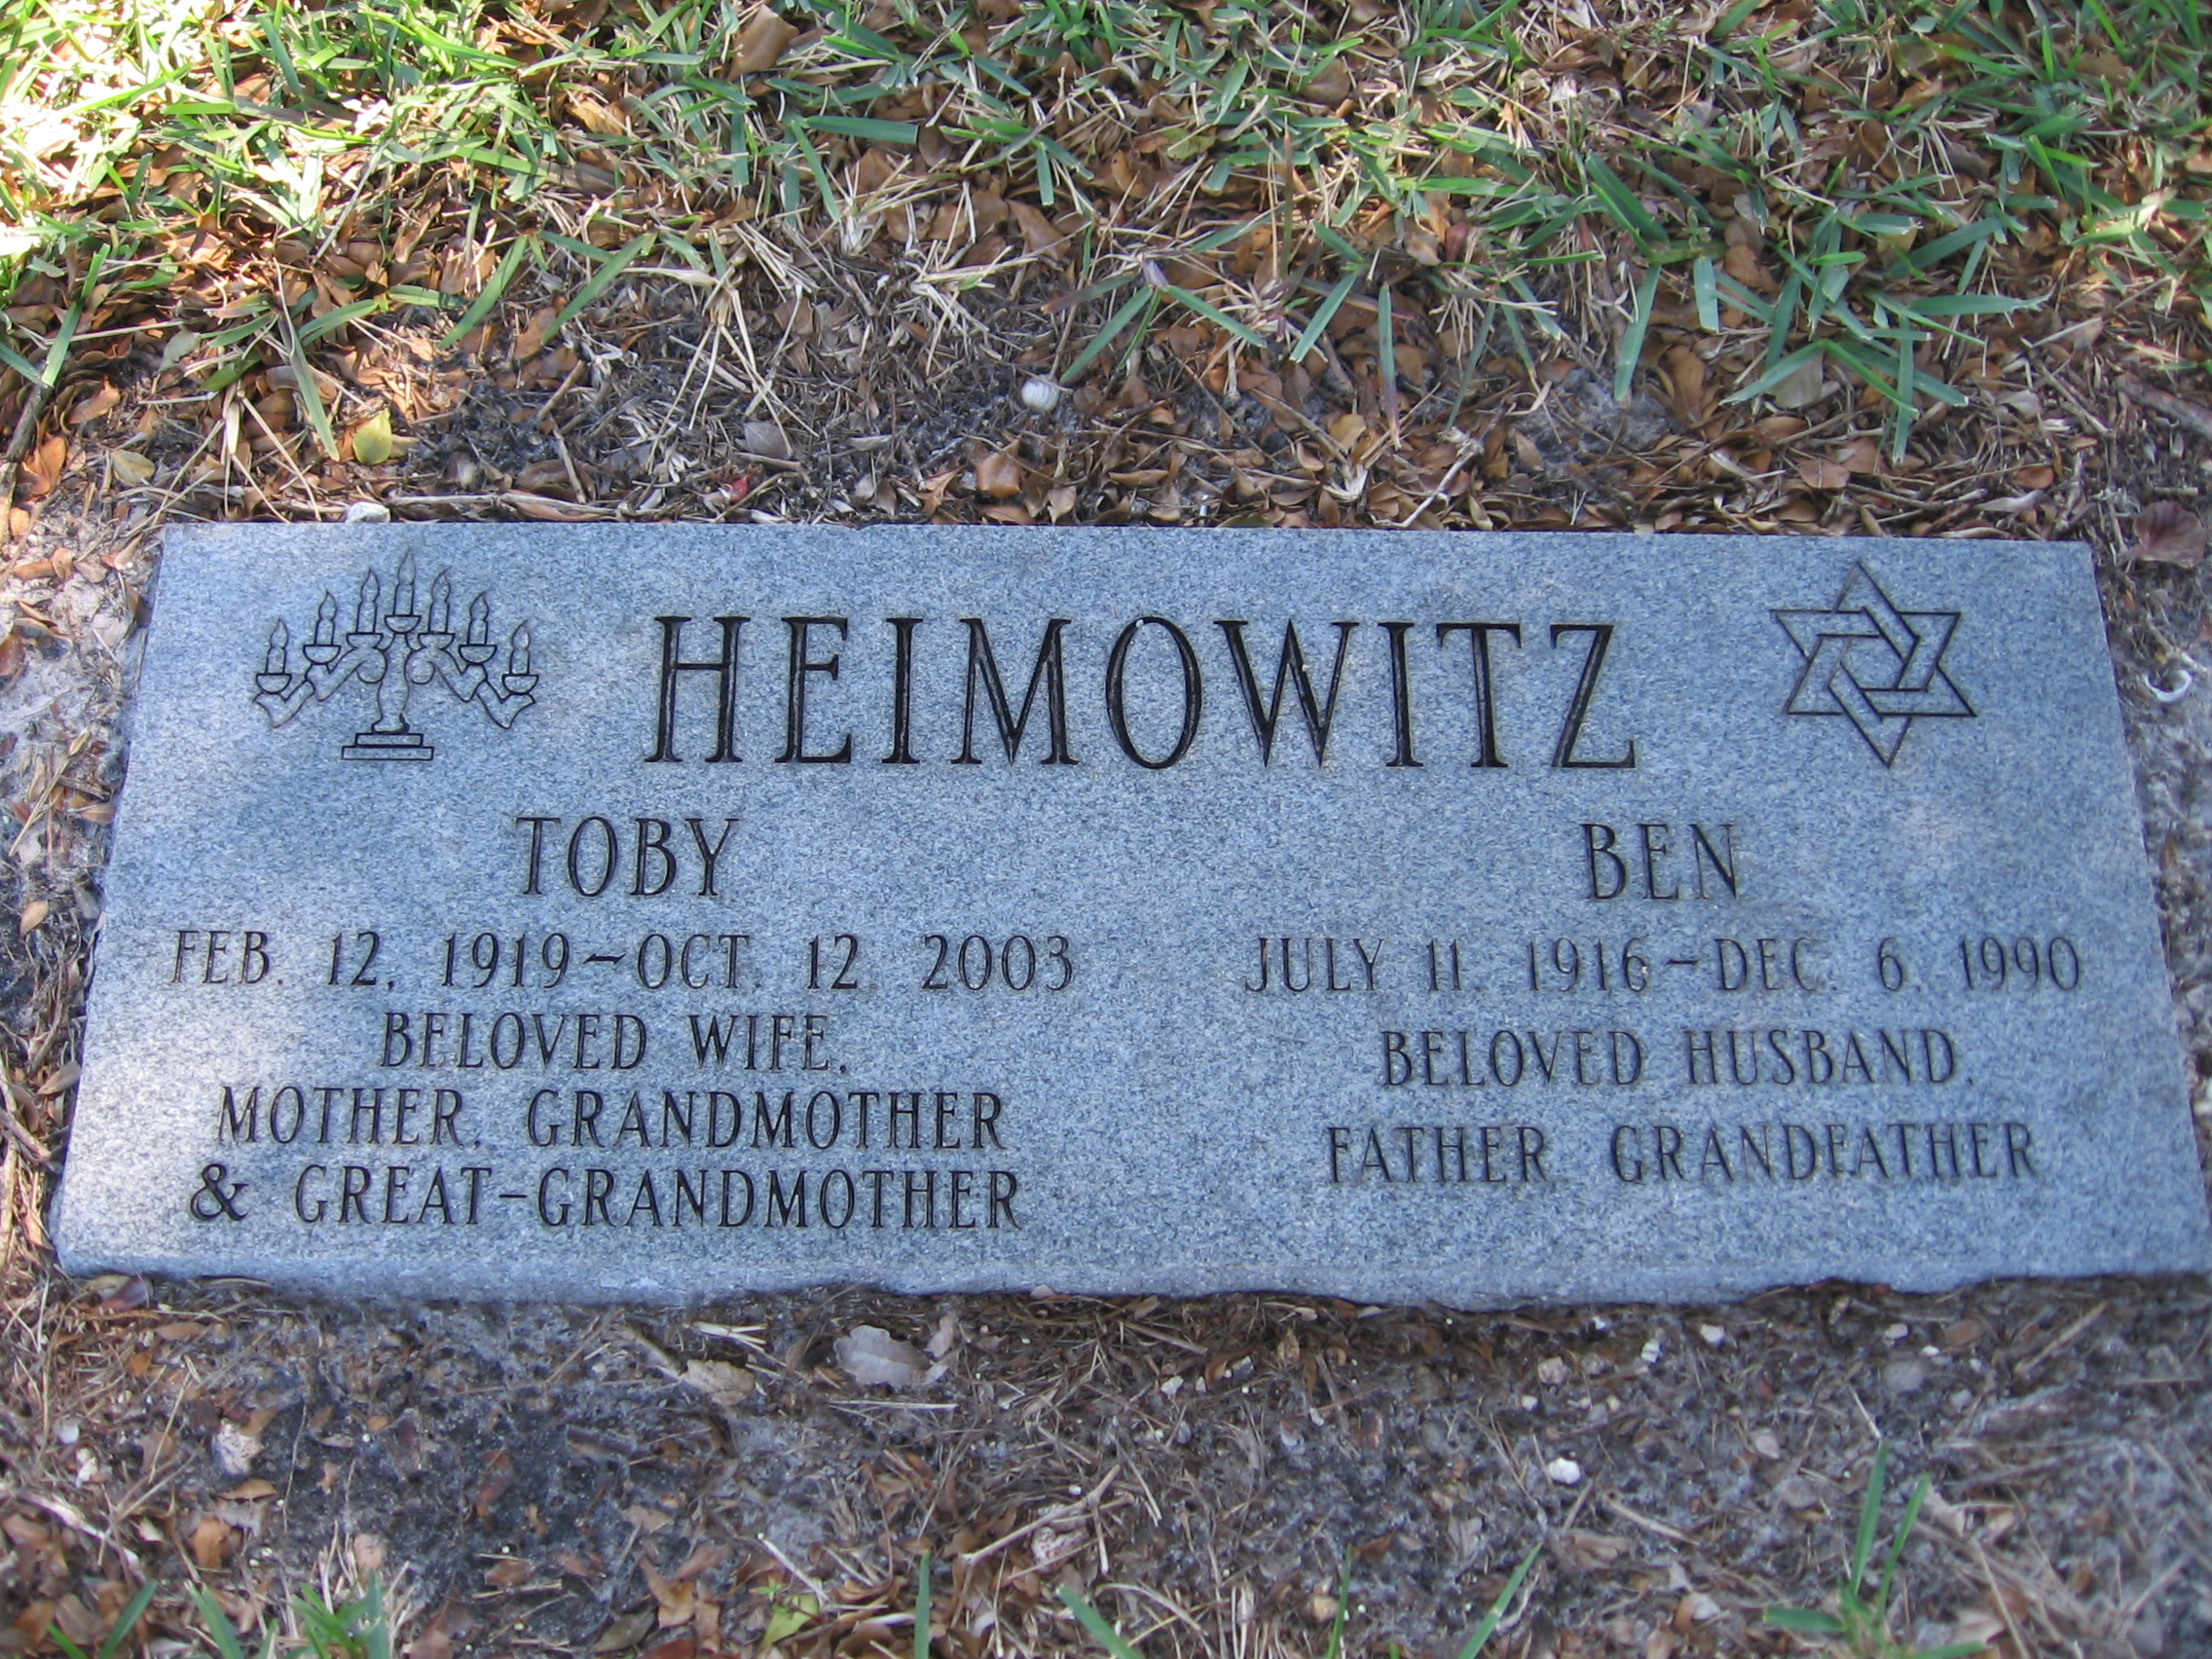 Ben Heimowitz